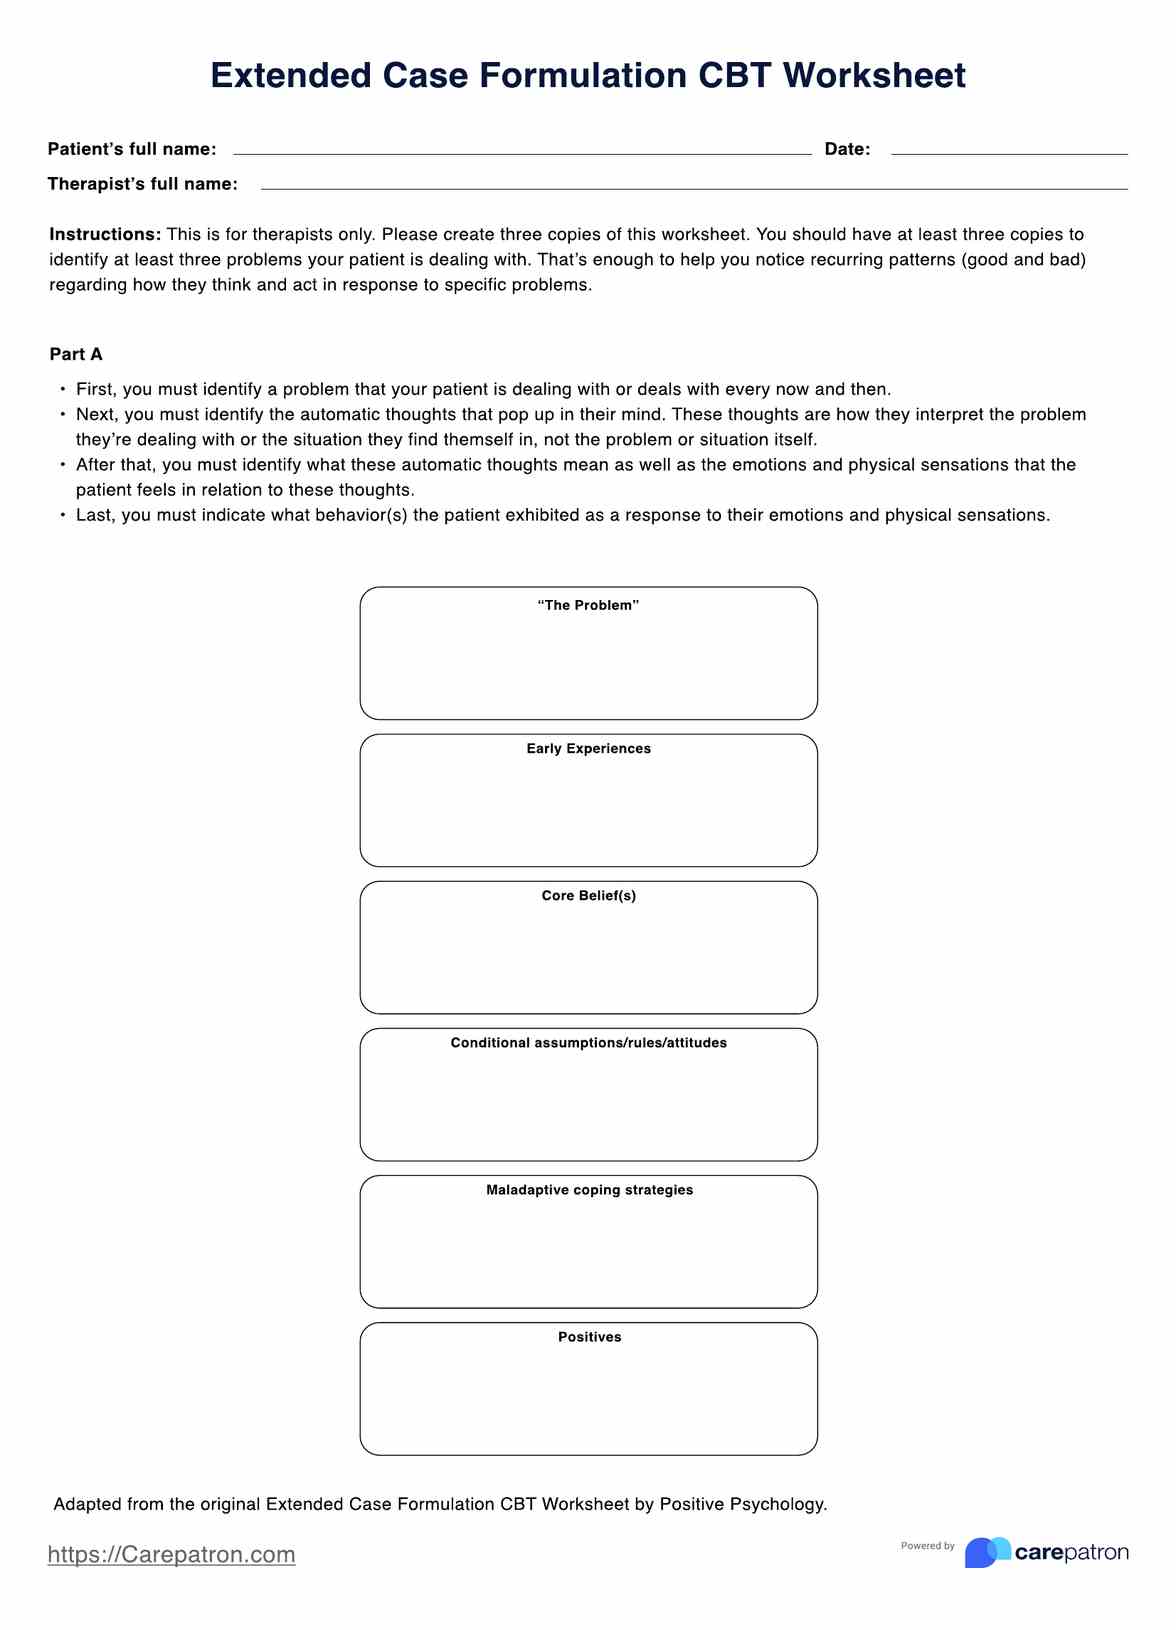 Extended Case Formulation CBT Worksheet PDF Example